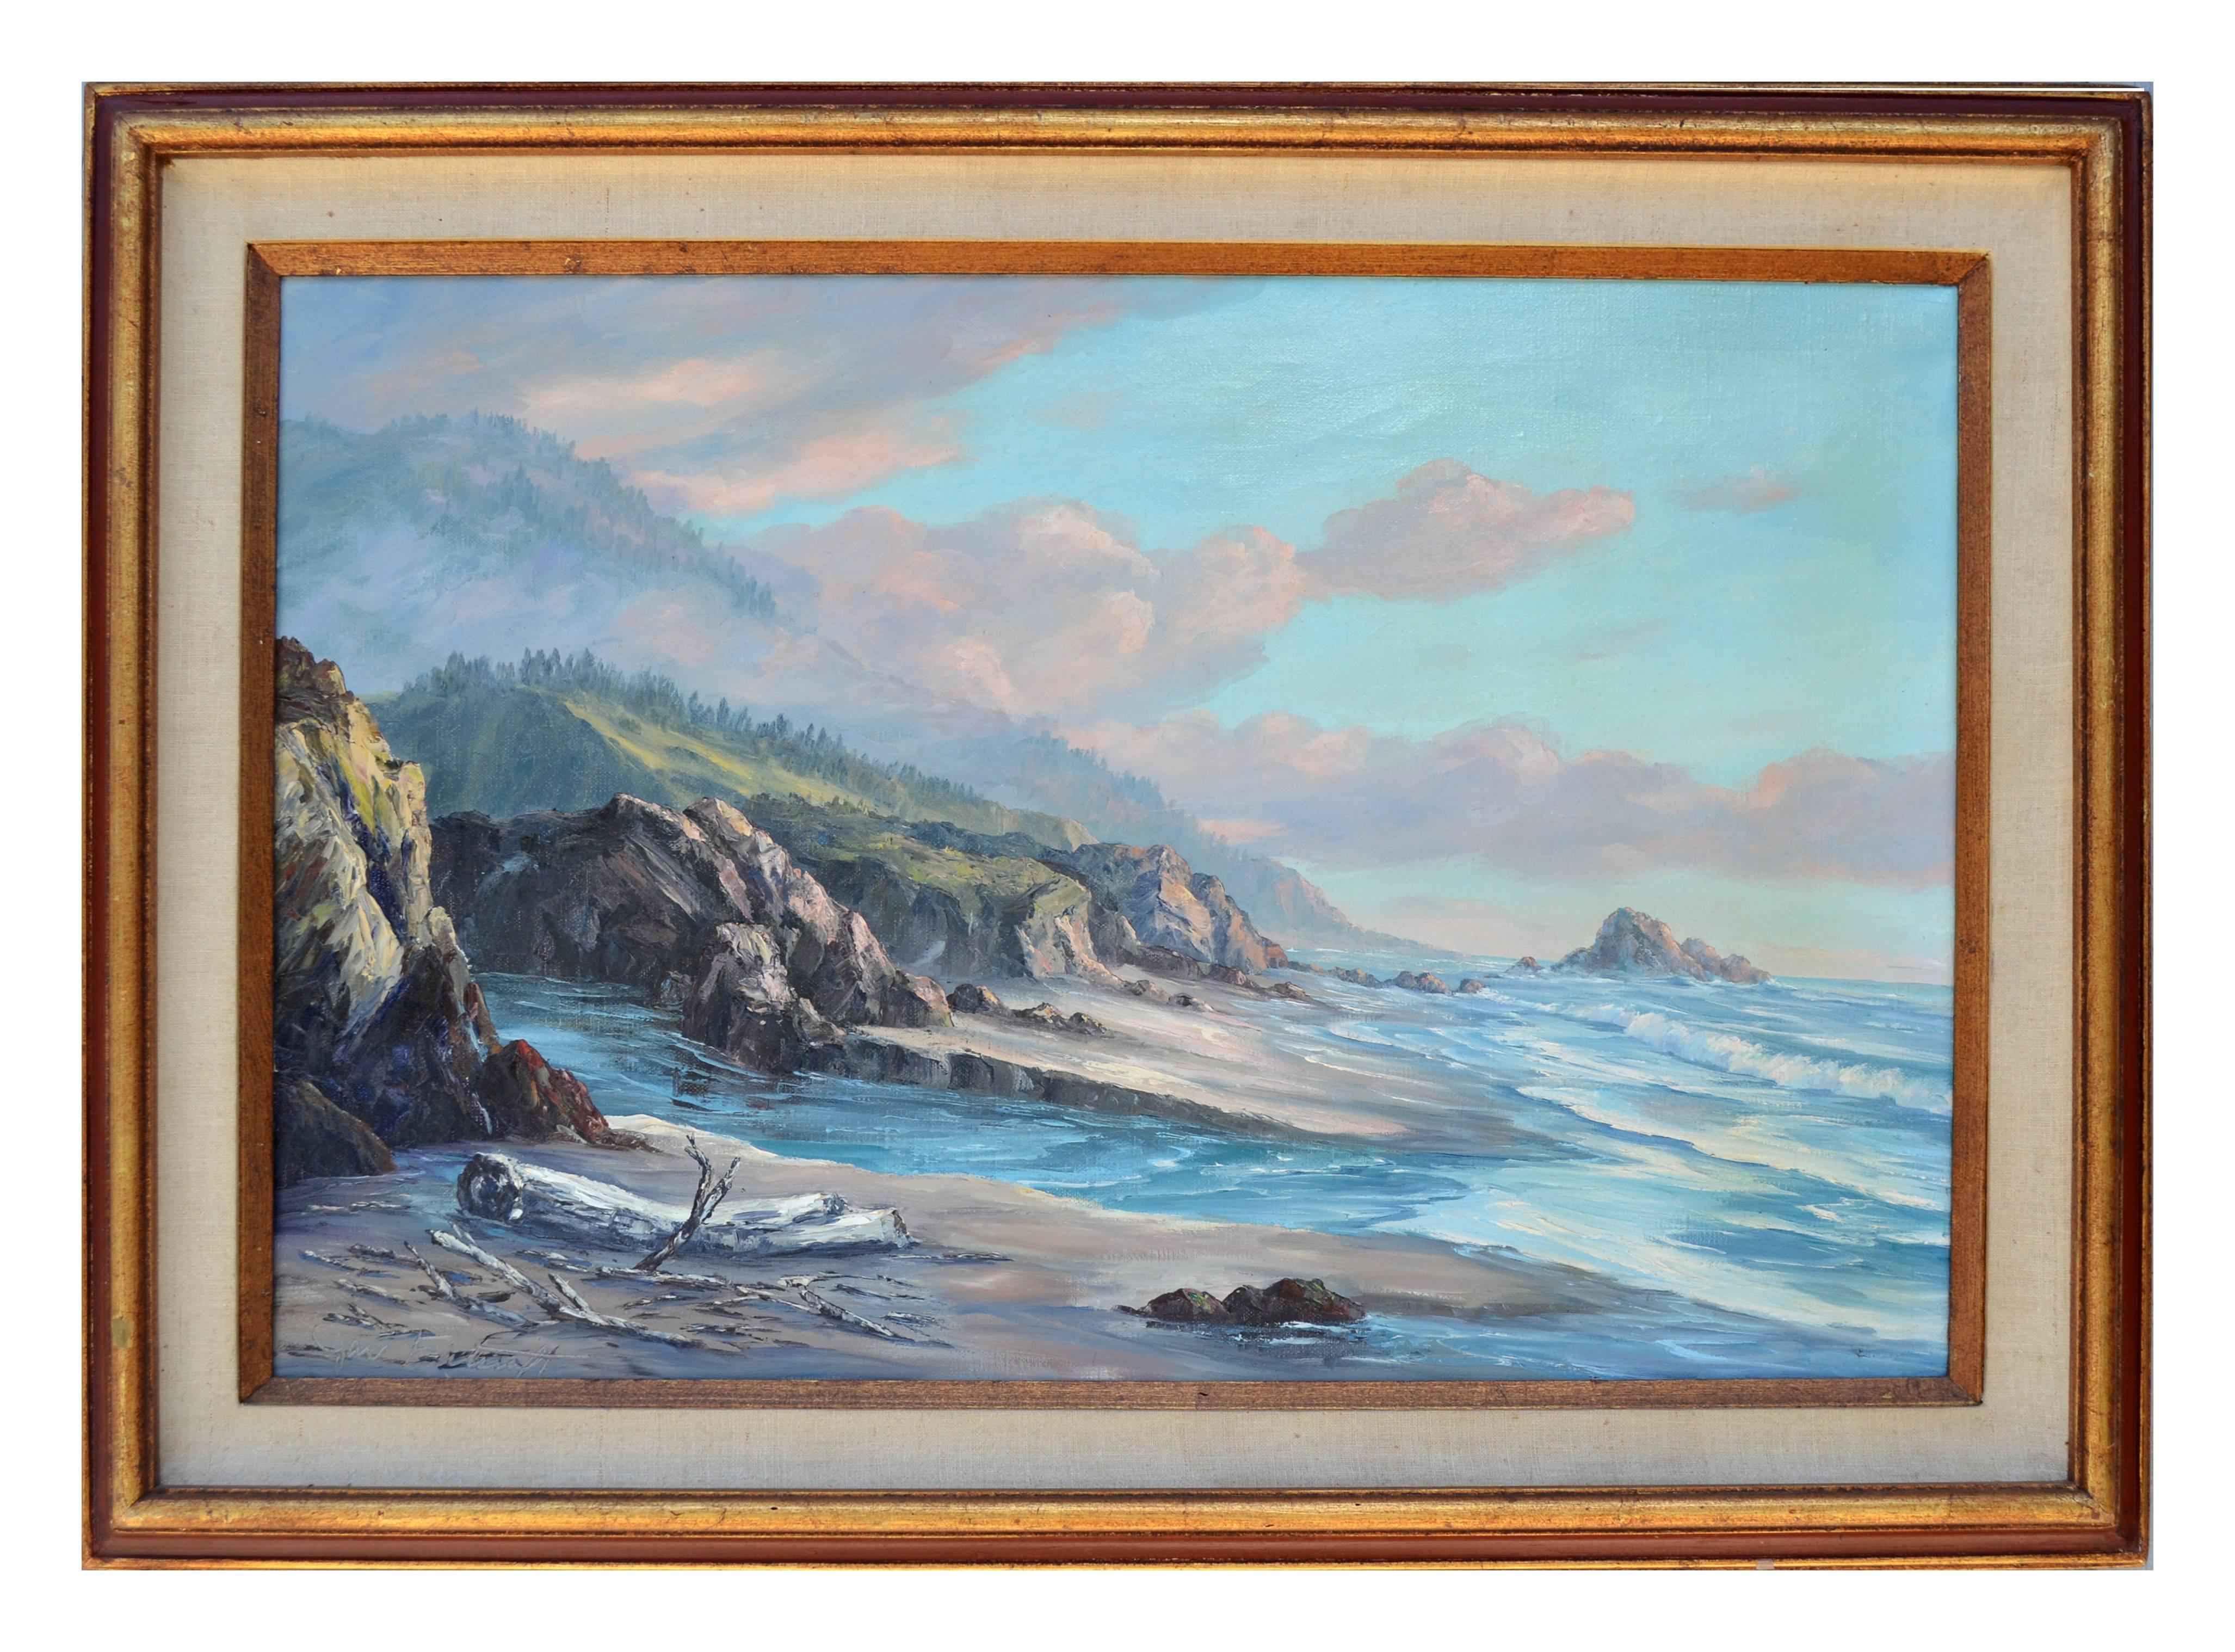 Landscape Painting Jac Falcraft - Vieille vue de la mer huile sur toile paysage de mer